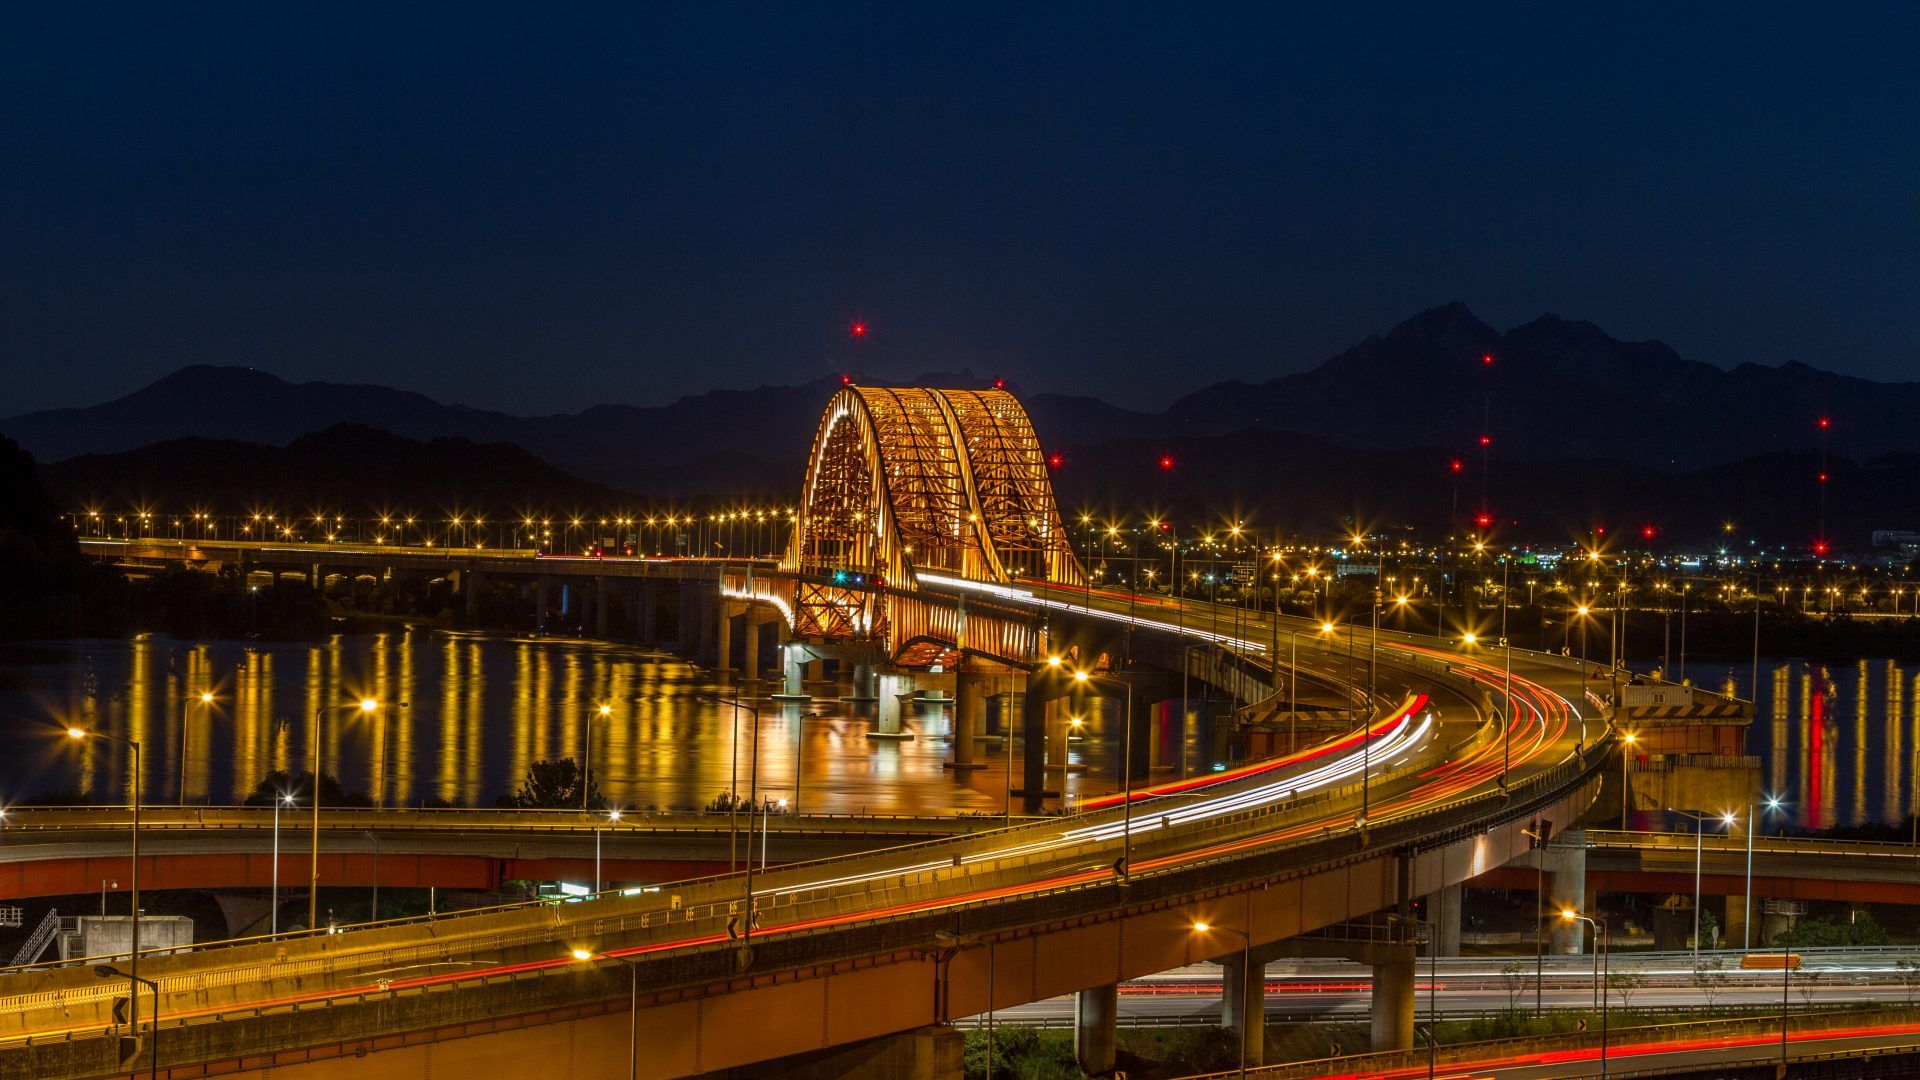 Seoul Banghwa Bridge Of The Han River In South Korea Length Of 2.5 Km Desktop HD Wallpaper 5200x3250, Wallpaper13.com